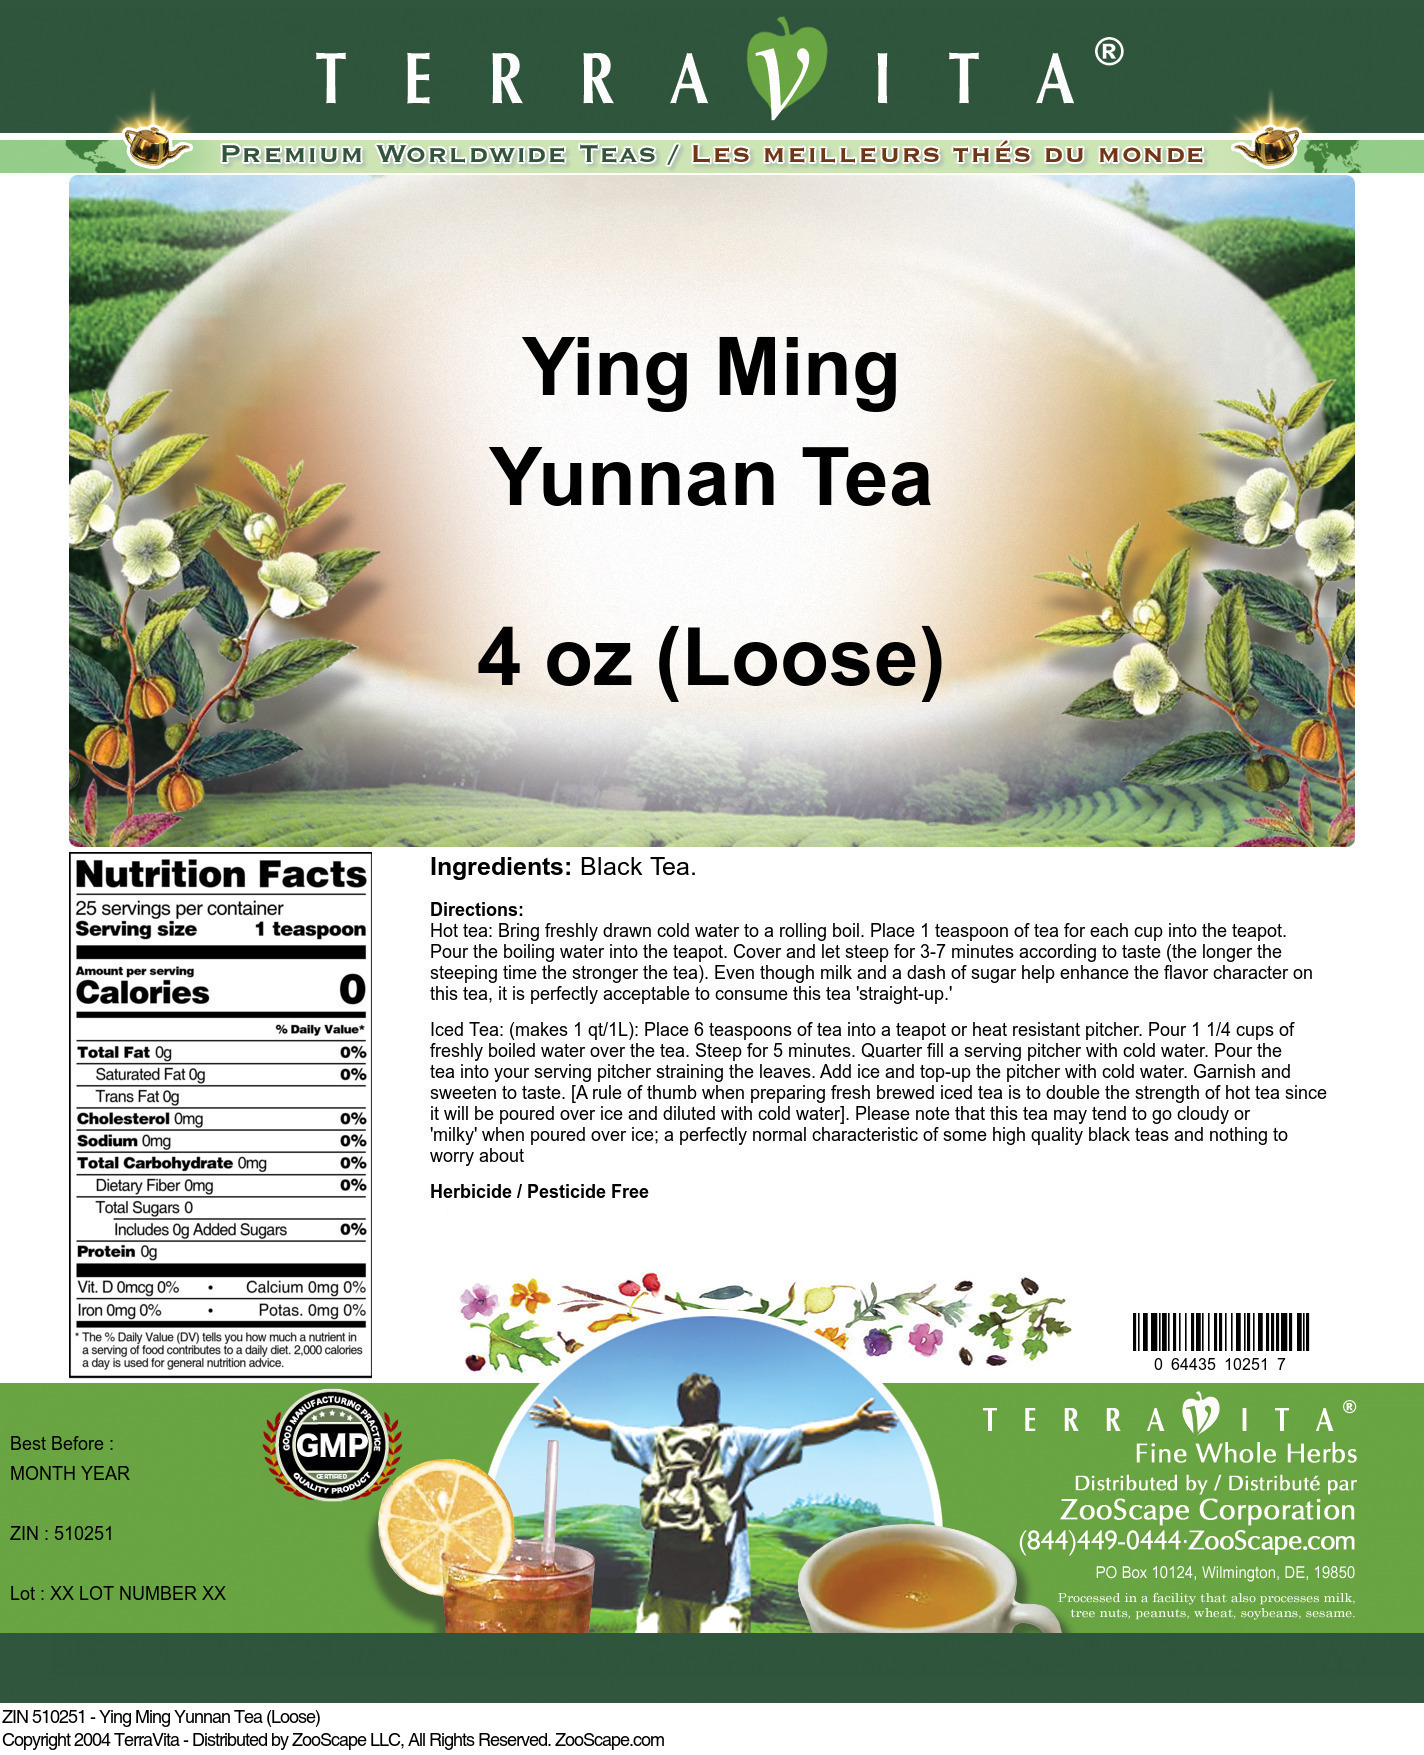 Ying Ming Yunnan Tea (Loose) - Label